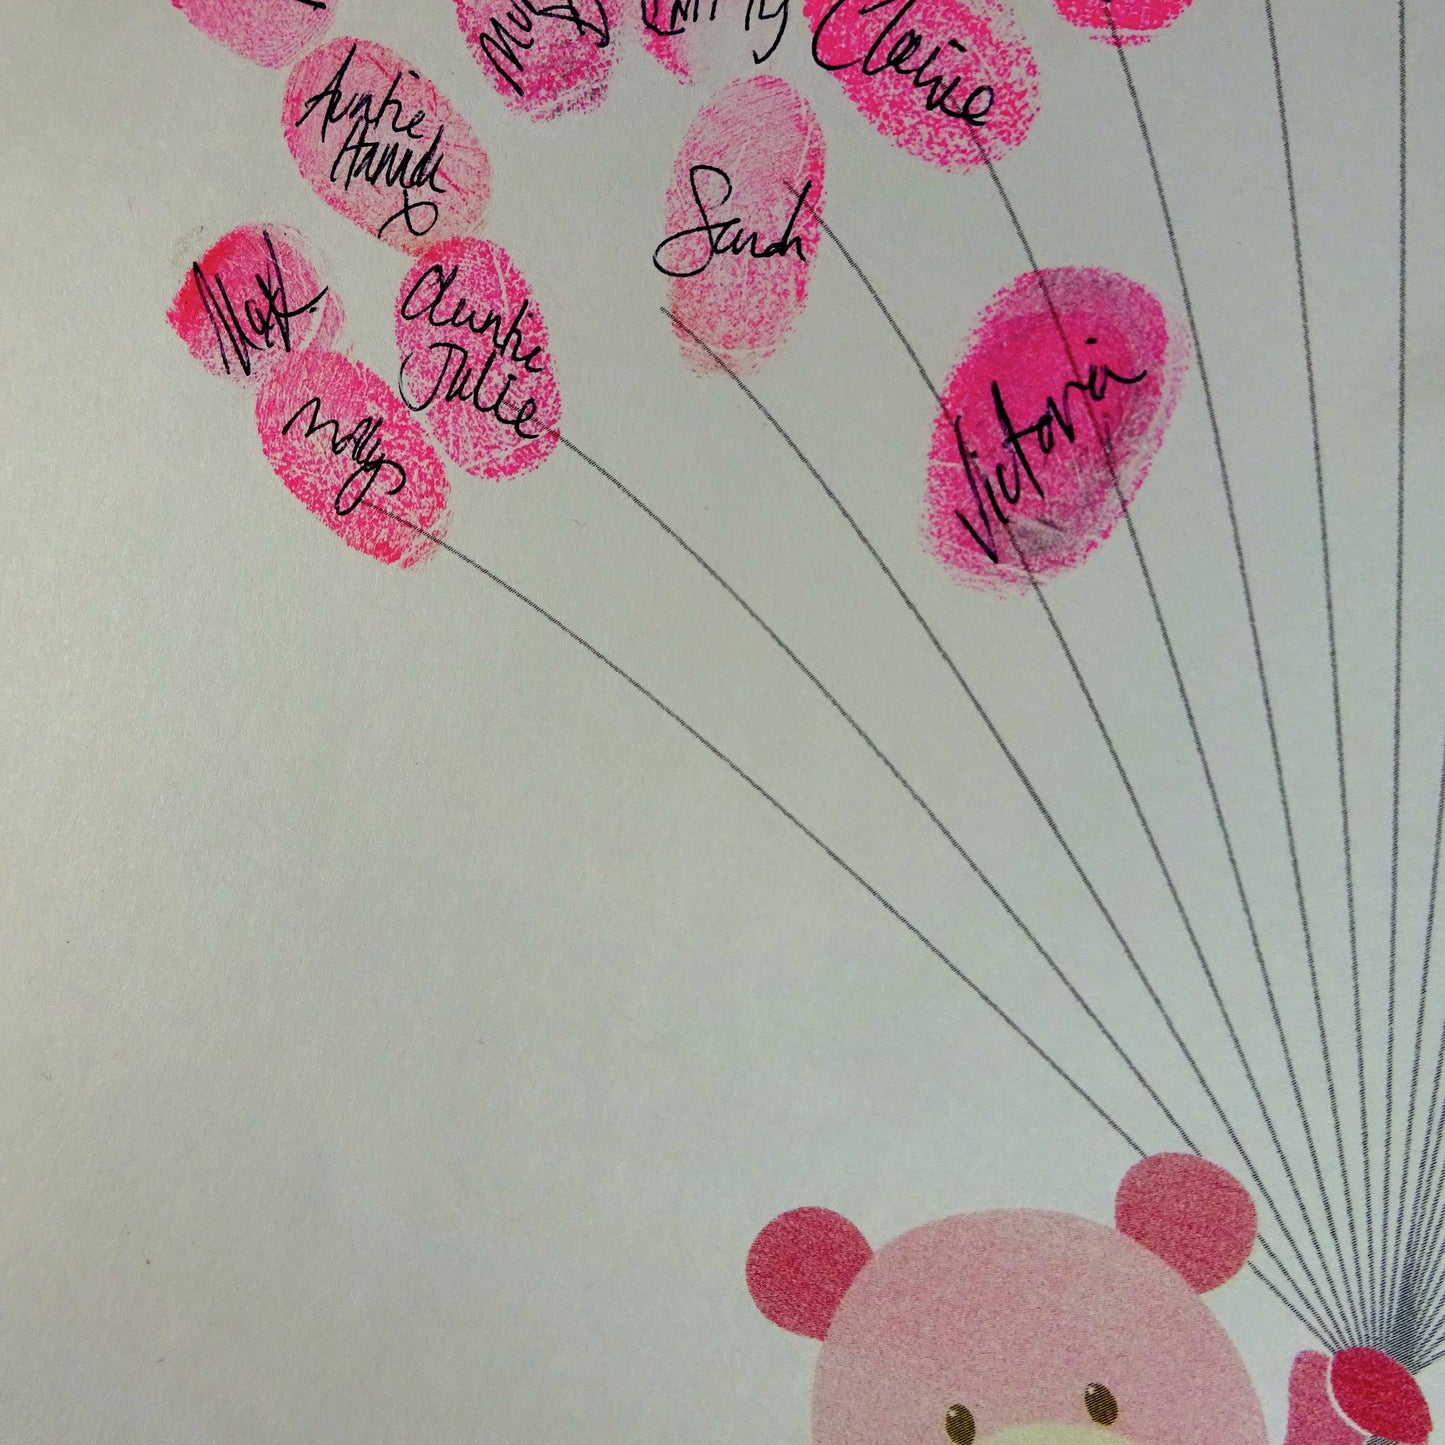 Fingerprint art, pink teddy holds fingerprint balloons